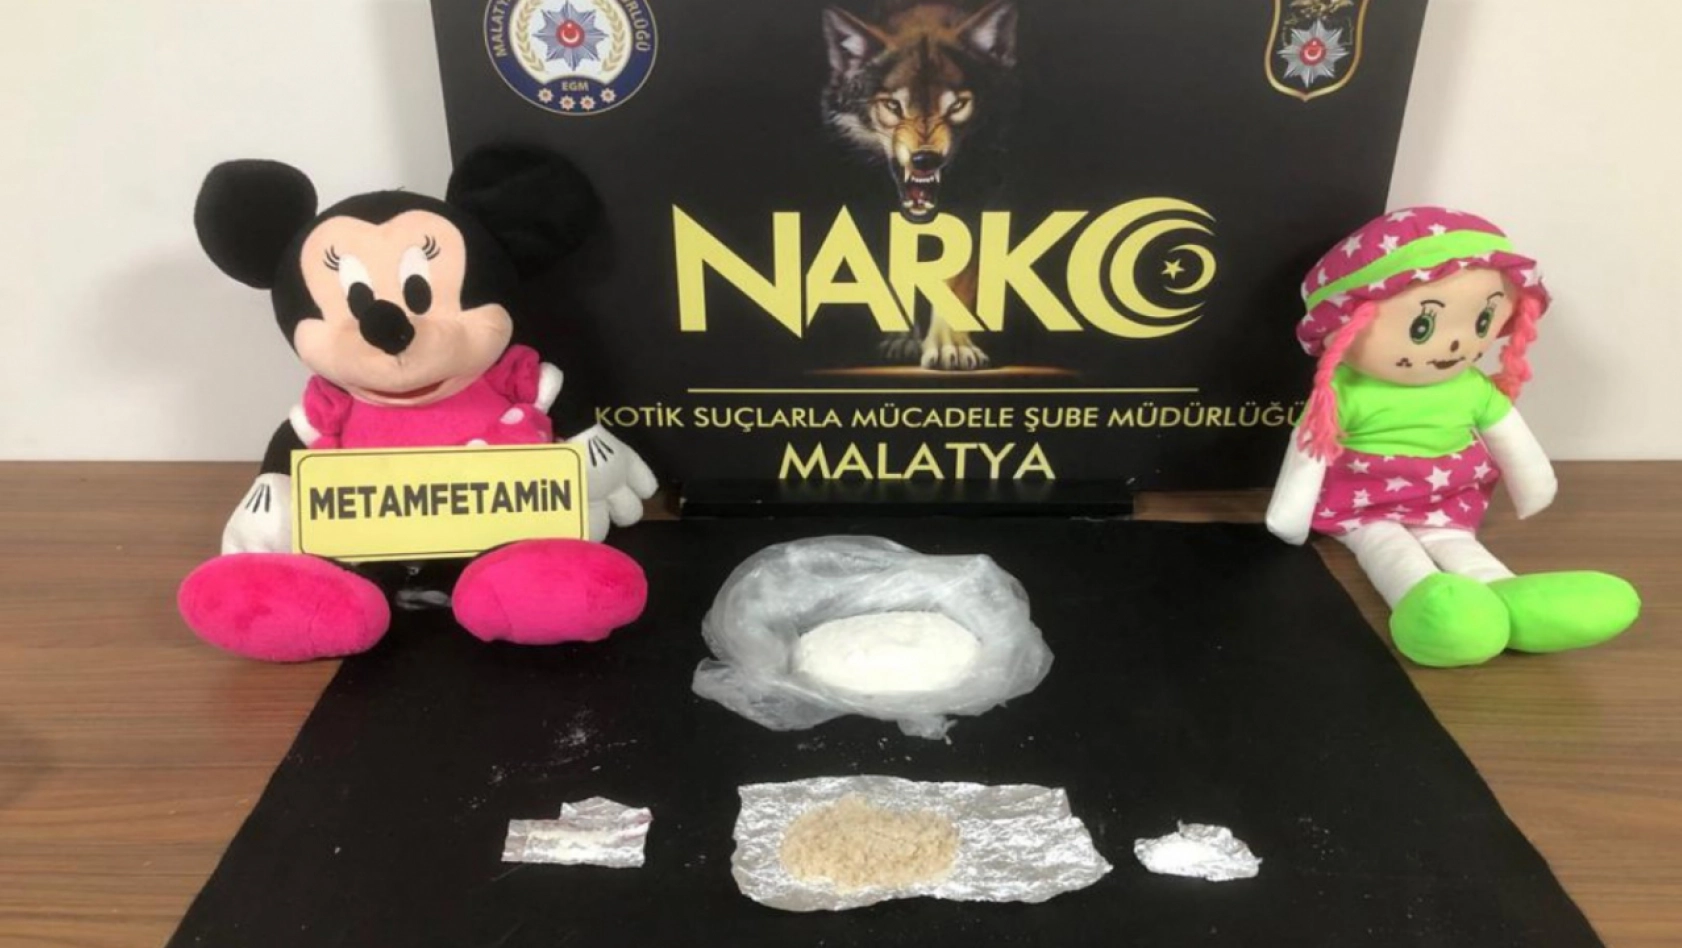 Malatya'da uyuşturucu operasyonu: 8 kişi tutuklandı